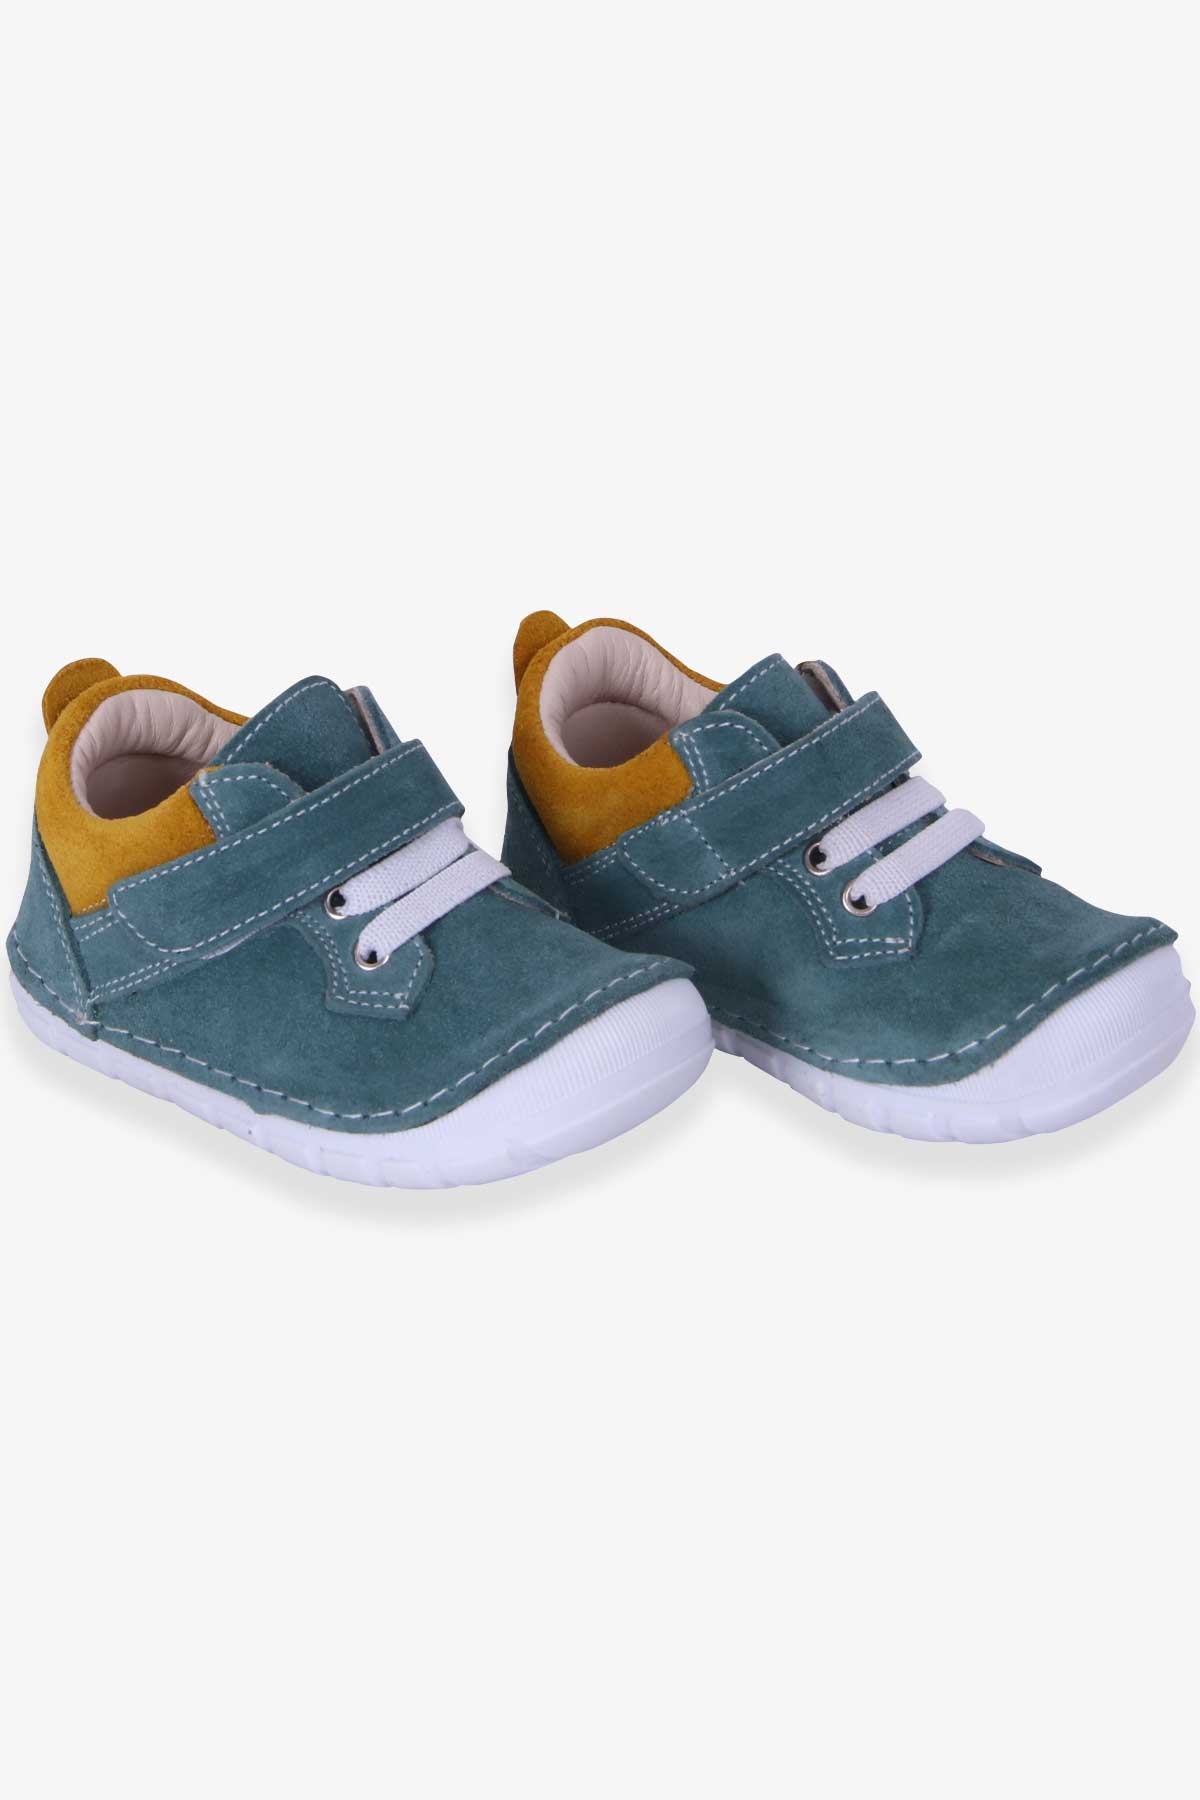 Erkek Çocuk Cırtlı Süet Ayakkabı Mint Yeşili 19-20 Numara - Tatlı Bebek  Ayakkabıları | Breeze